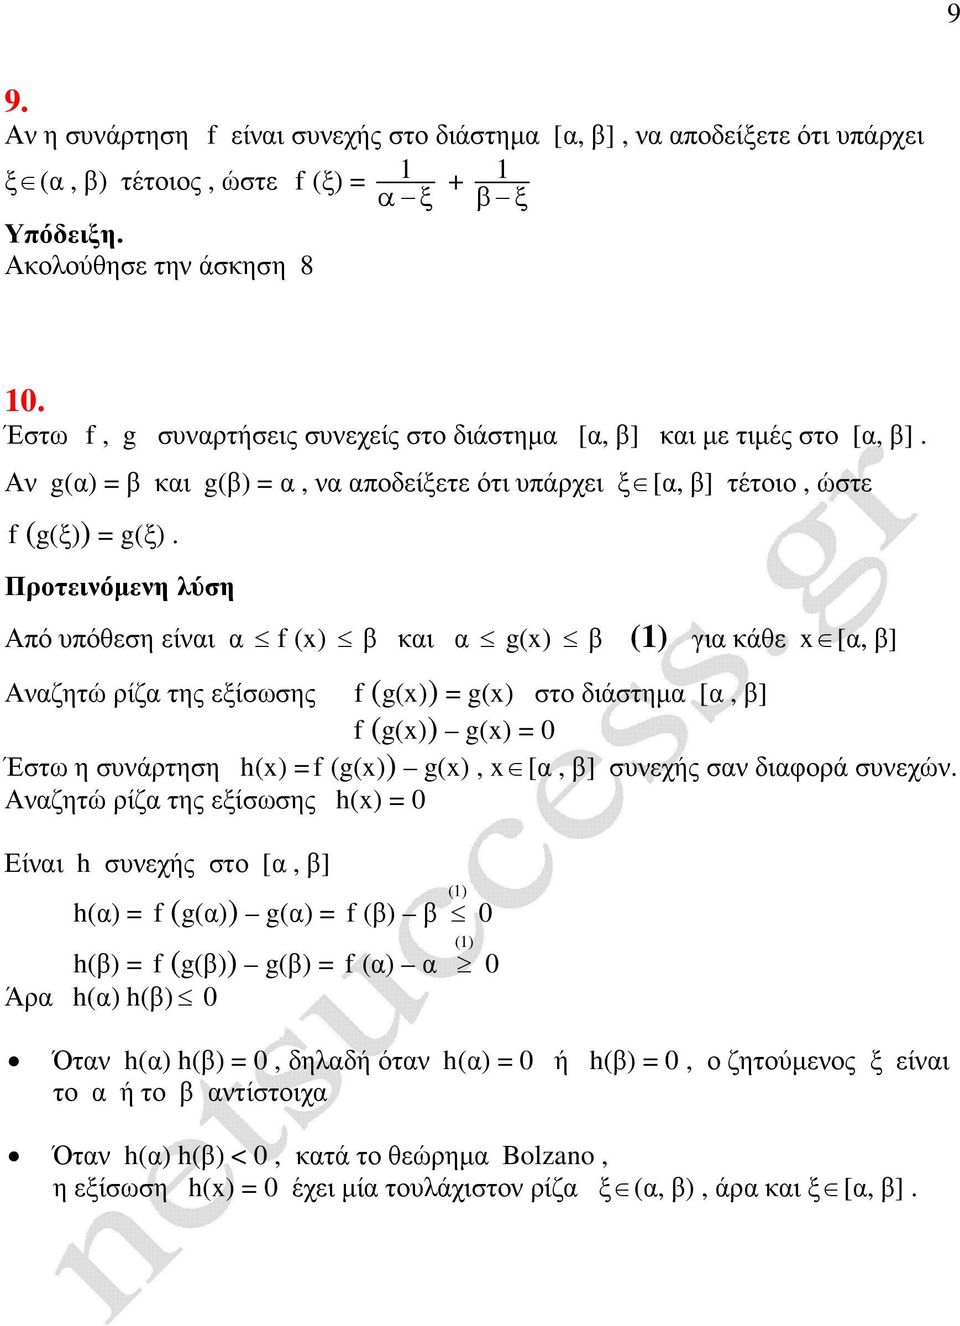 Πρτεινόµενη λύση Αό υόθεση είναι α f () β και α g() β () για κάθε [α, β] Αναζητώ ρίζα της εξίσωσης f (g()) = g() στ διάστηµα [α, β] f (g()) g() = 0 Έστω η συνάρτηση h() = f (g()) g(), [α, β] συνεχής